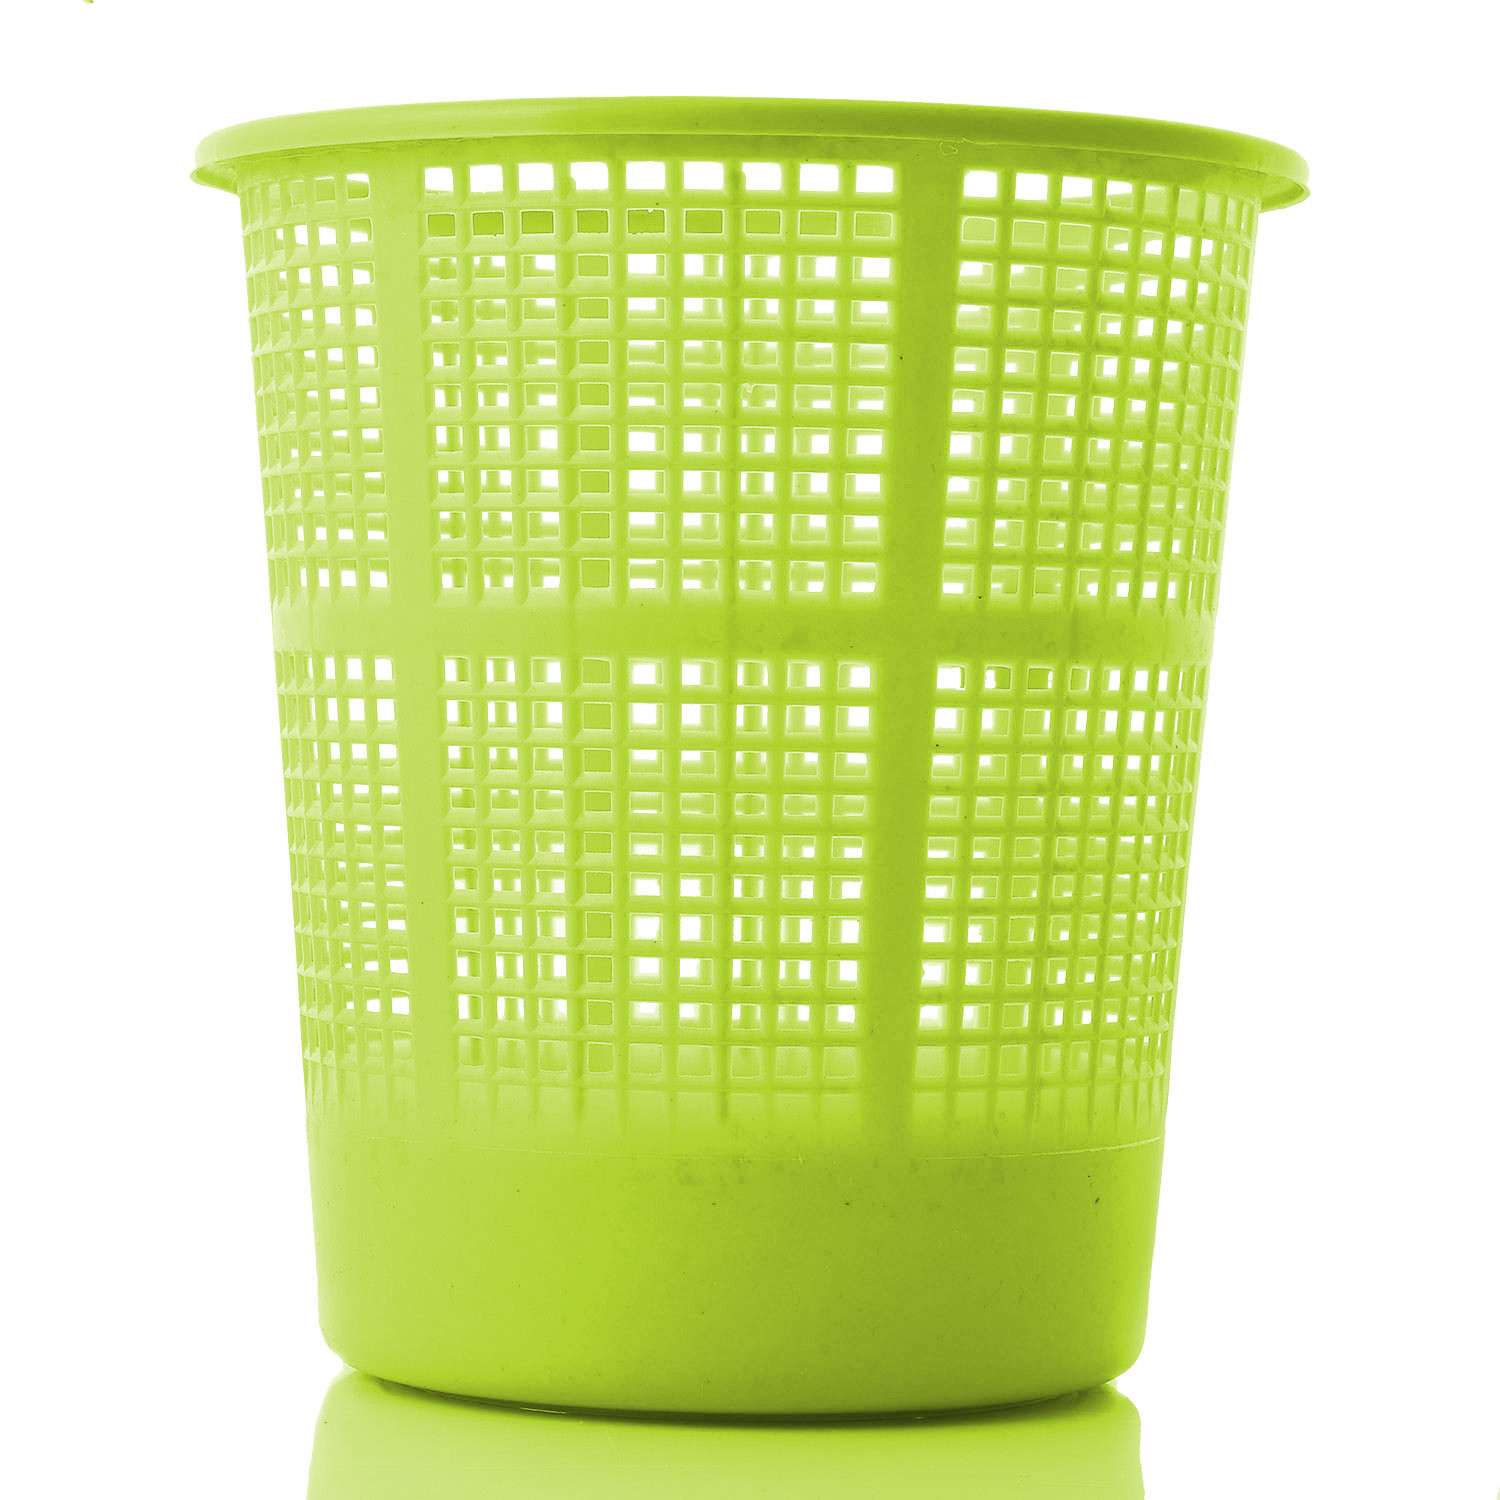 Kuber Industries Plastic Mesh Dustbin Garbage Bin for Office use, School, Bedroom,Kids Room, Home, Multi Purpose,5 Liters (Green & Pink)-KUBMART270